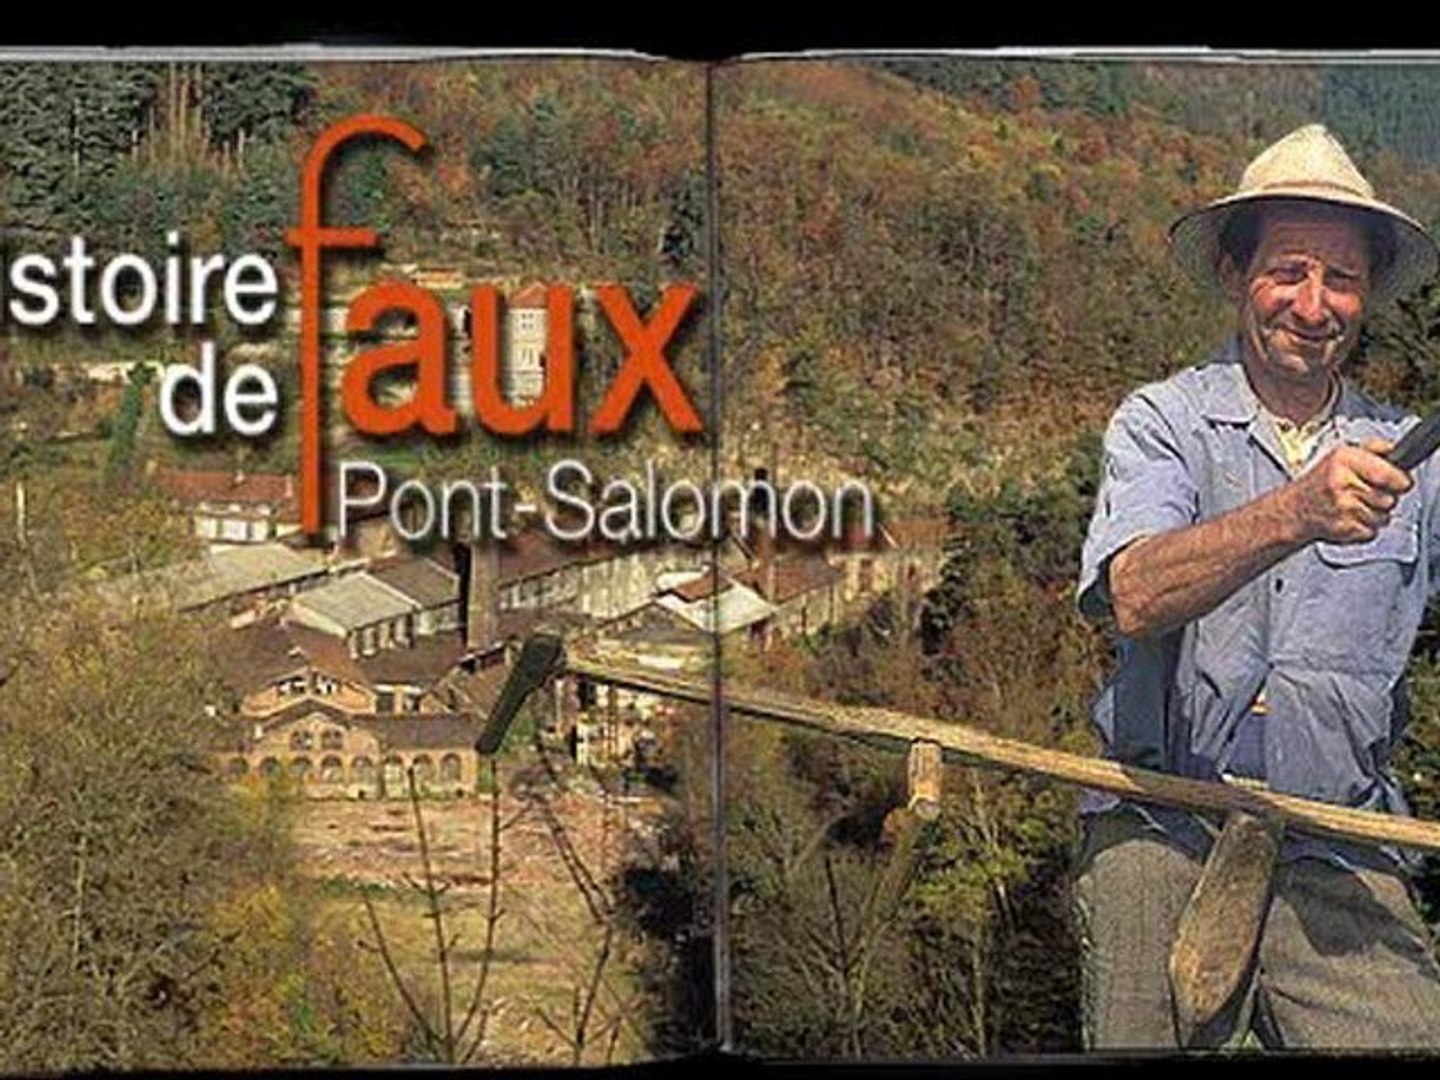 Livre Pont Salomon, une histoire de Faux ©Bernard Peyrol - Vidéo Dailymotion